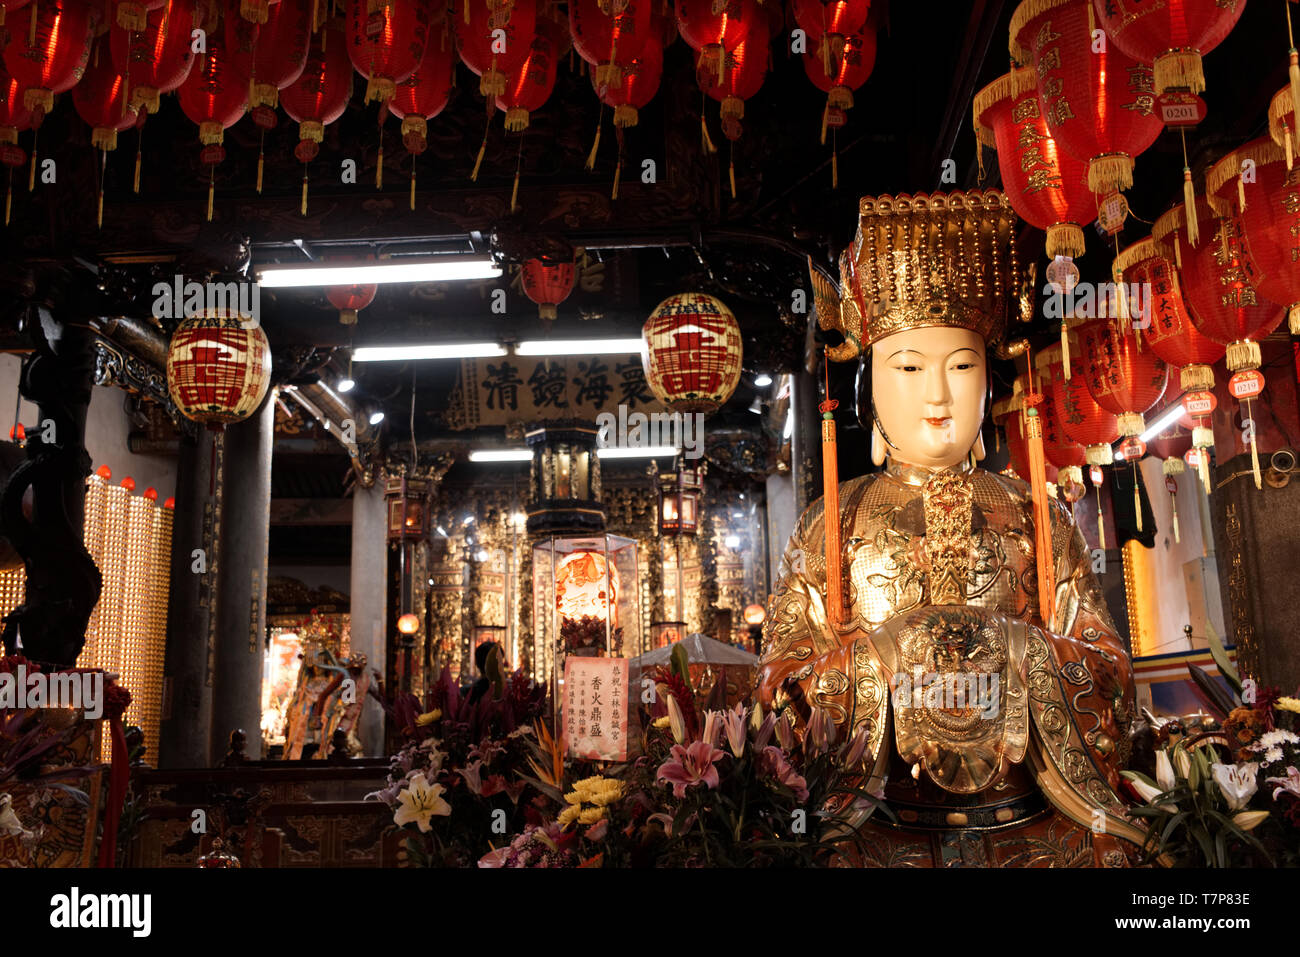 Une statue sacrée dans un temple asiatique entre lampions rouges et de fleurs Banque D'Images